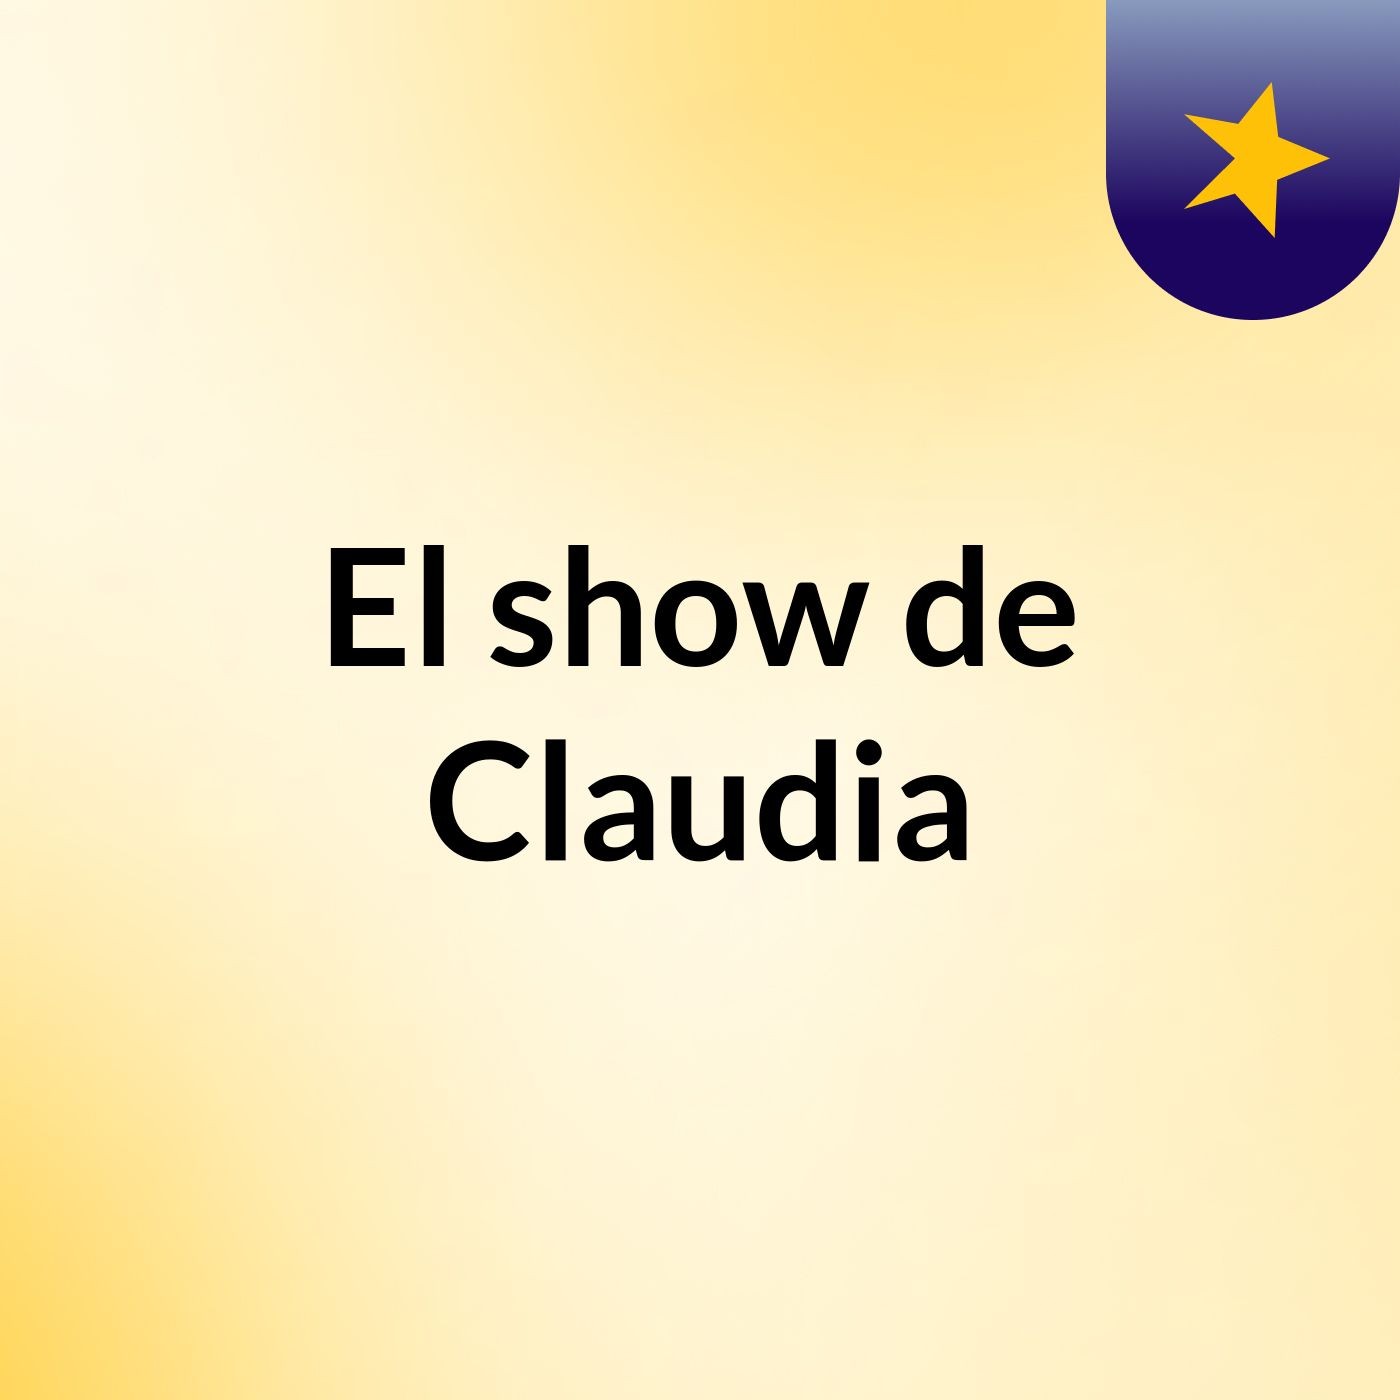 Episodio 2 - El show de Claudia